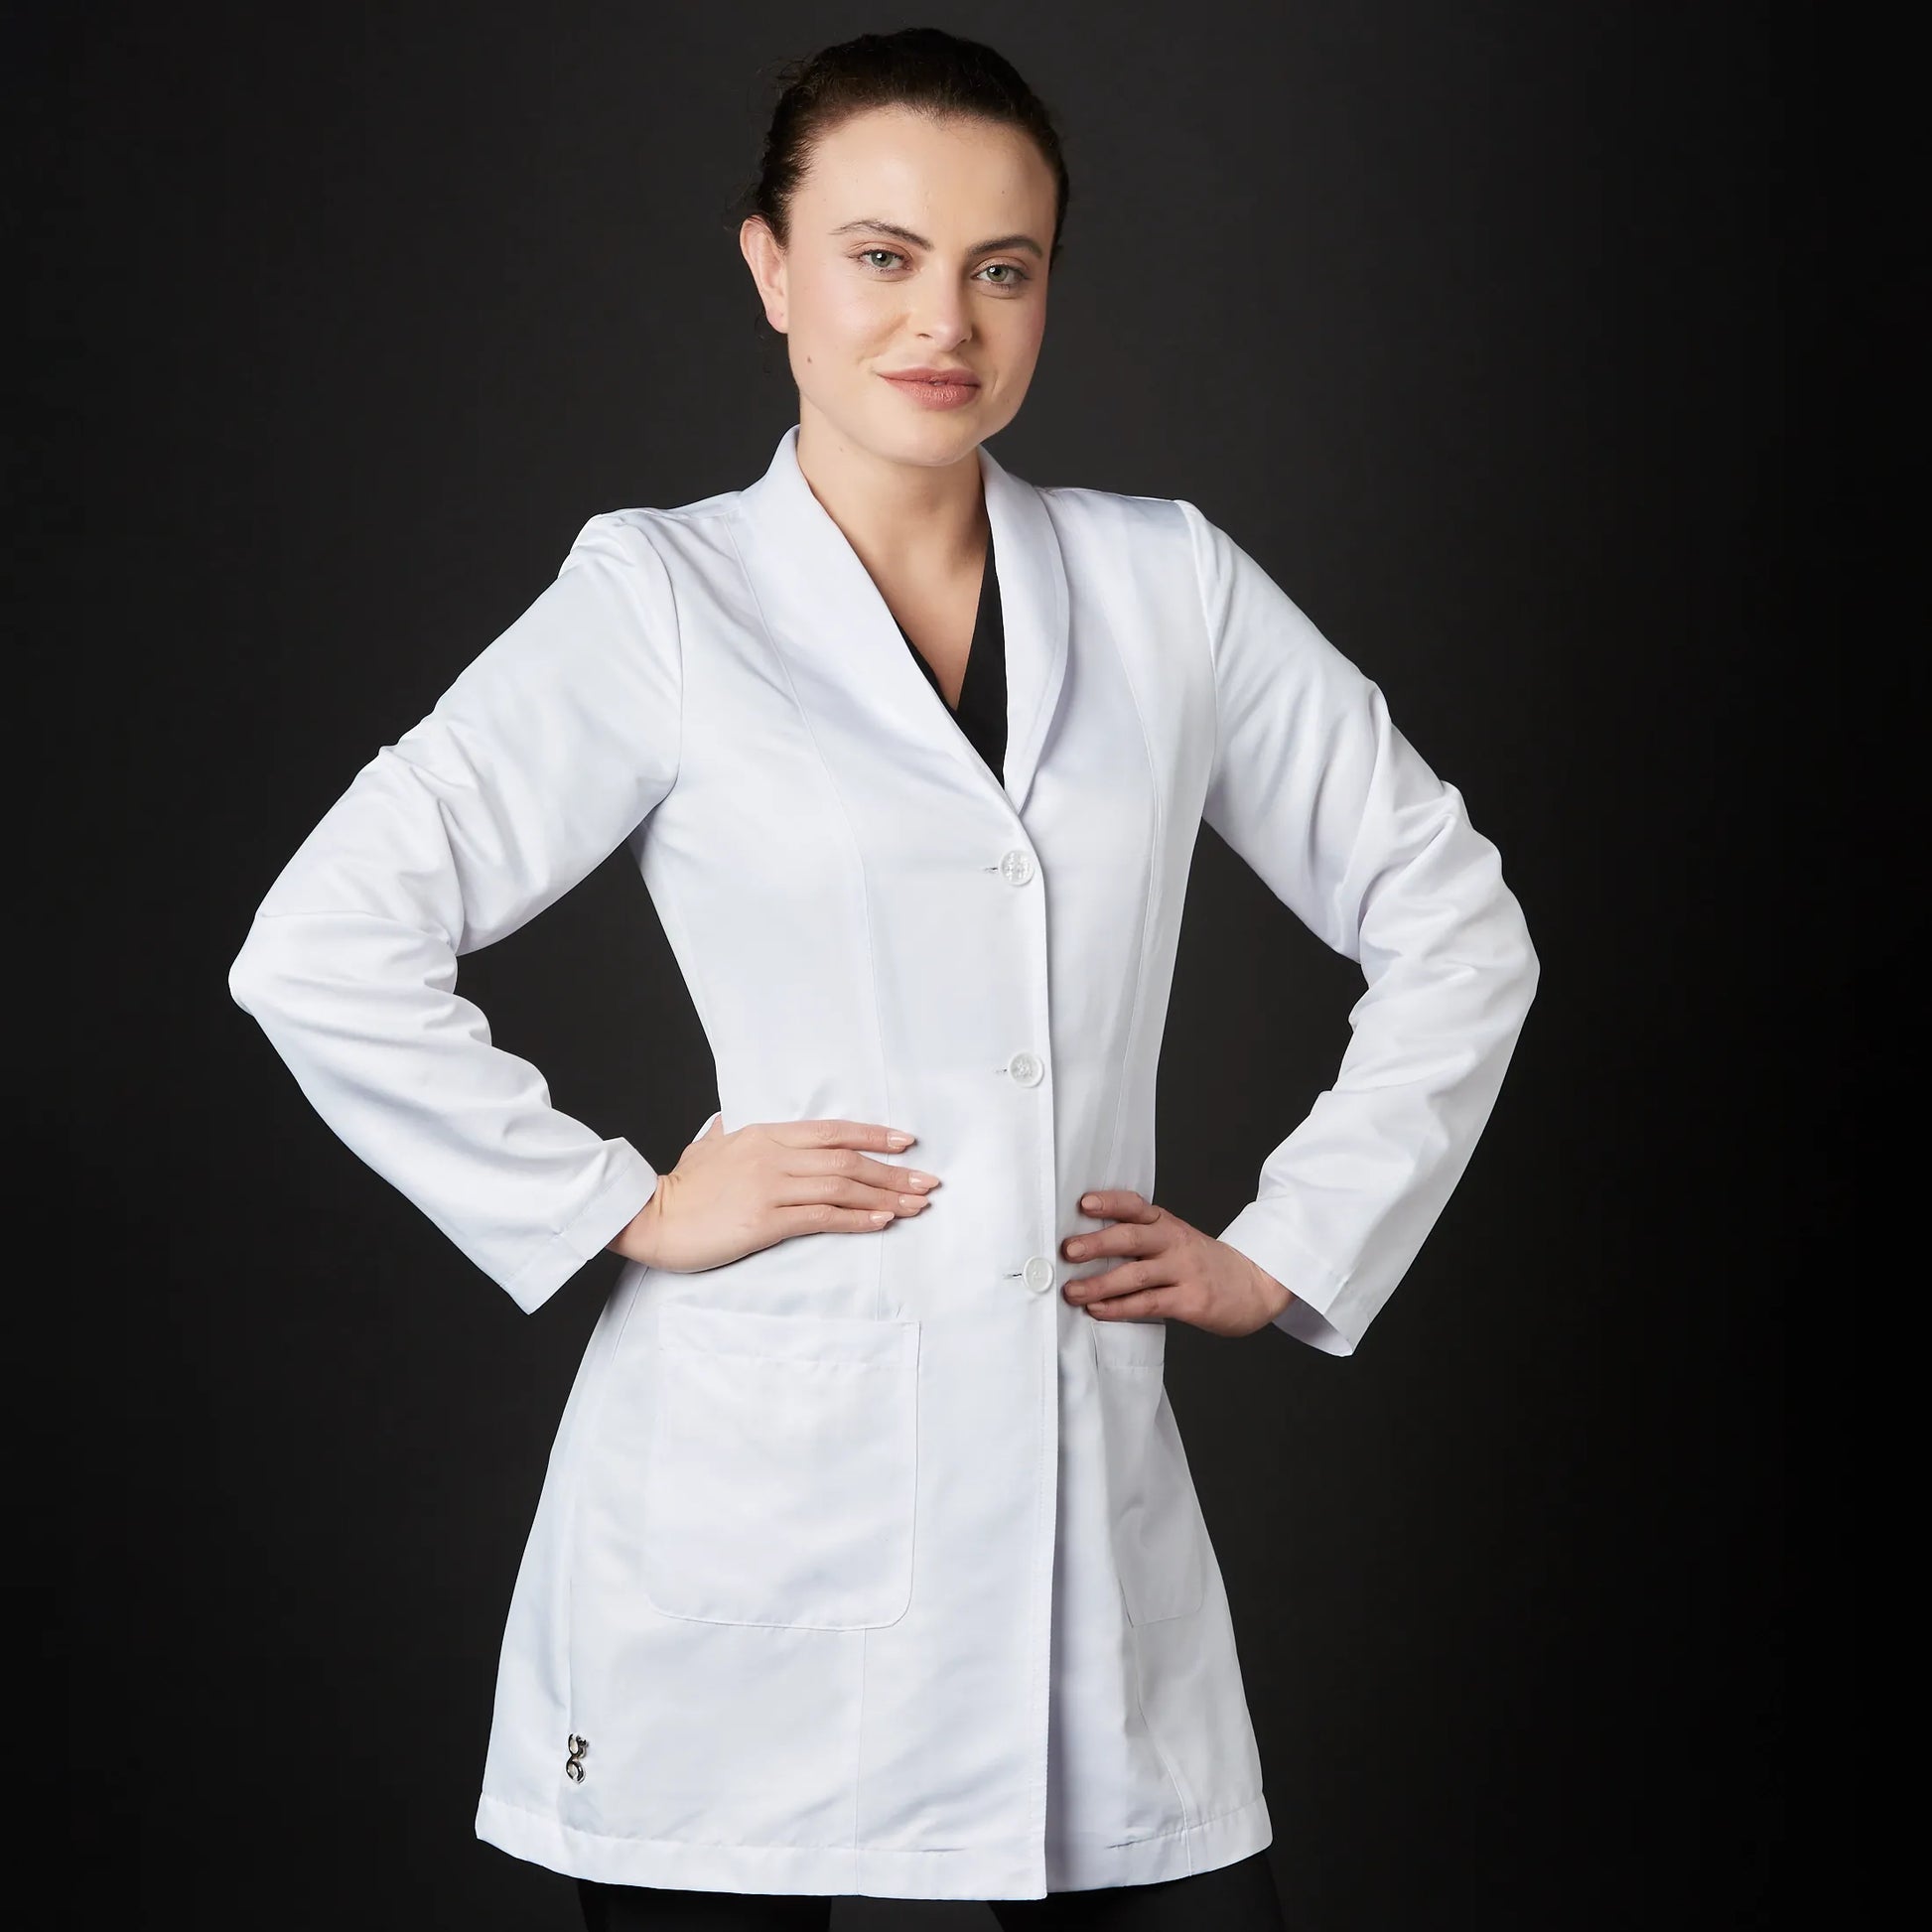 Bata clásica blanca barata mujer. Compra online uniforme sanitario